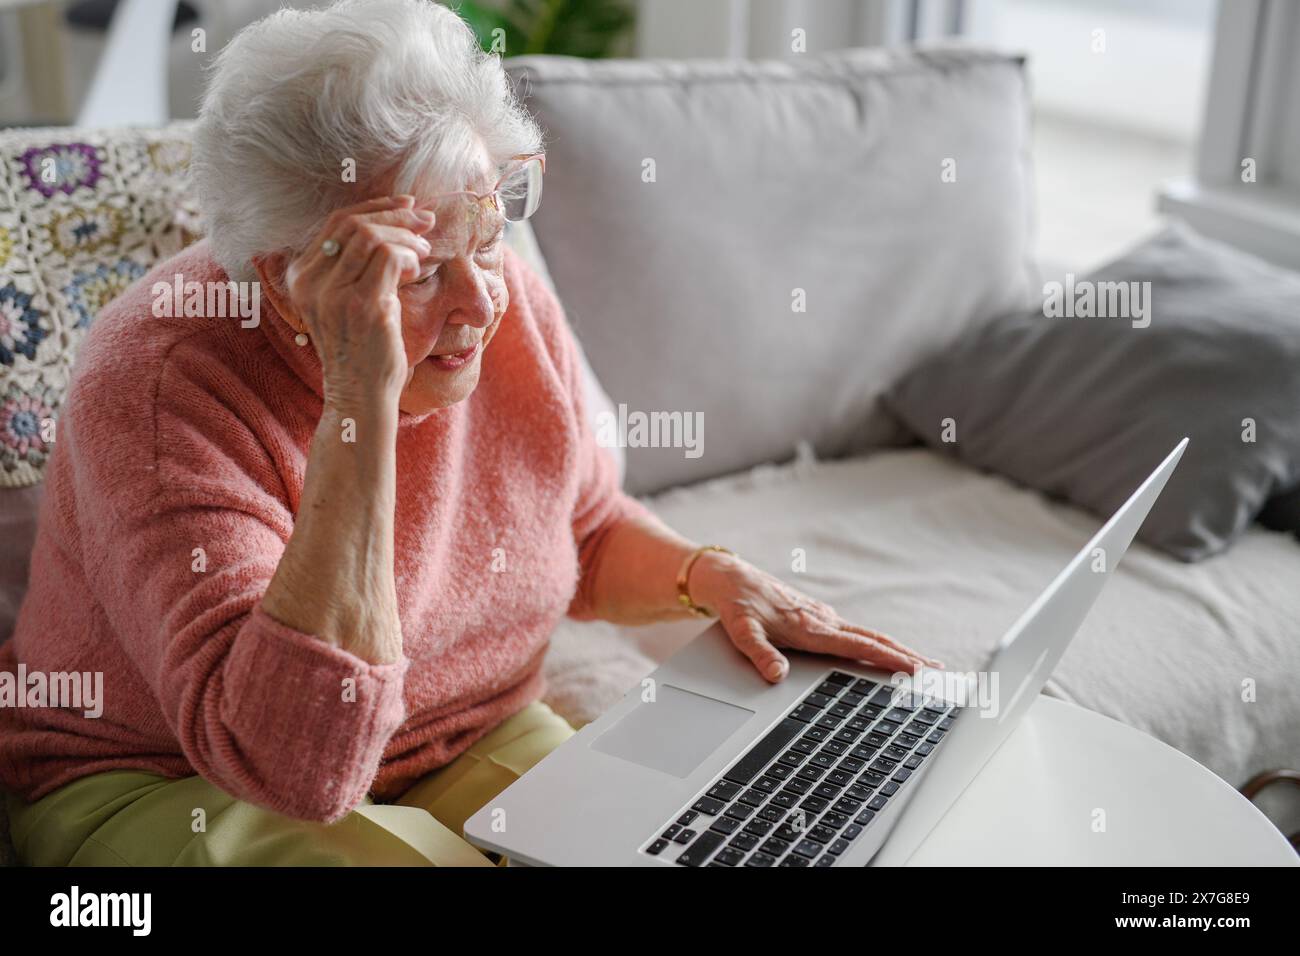 Femme senior apprenant à travailler avec un ordinateur portable, la technologie et Internet. Importance de la culture numérique pour les personnes âgées. Banque D'Images